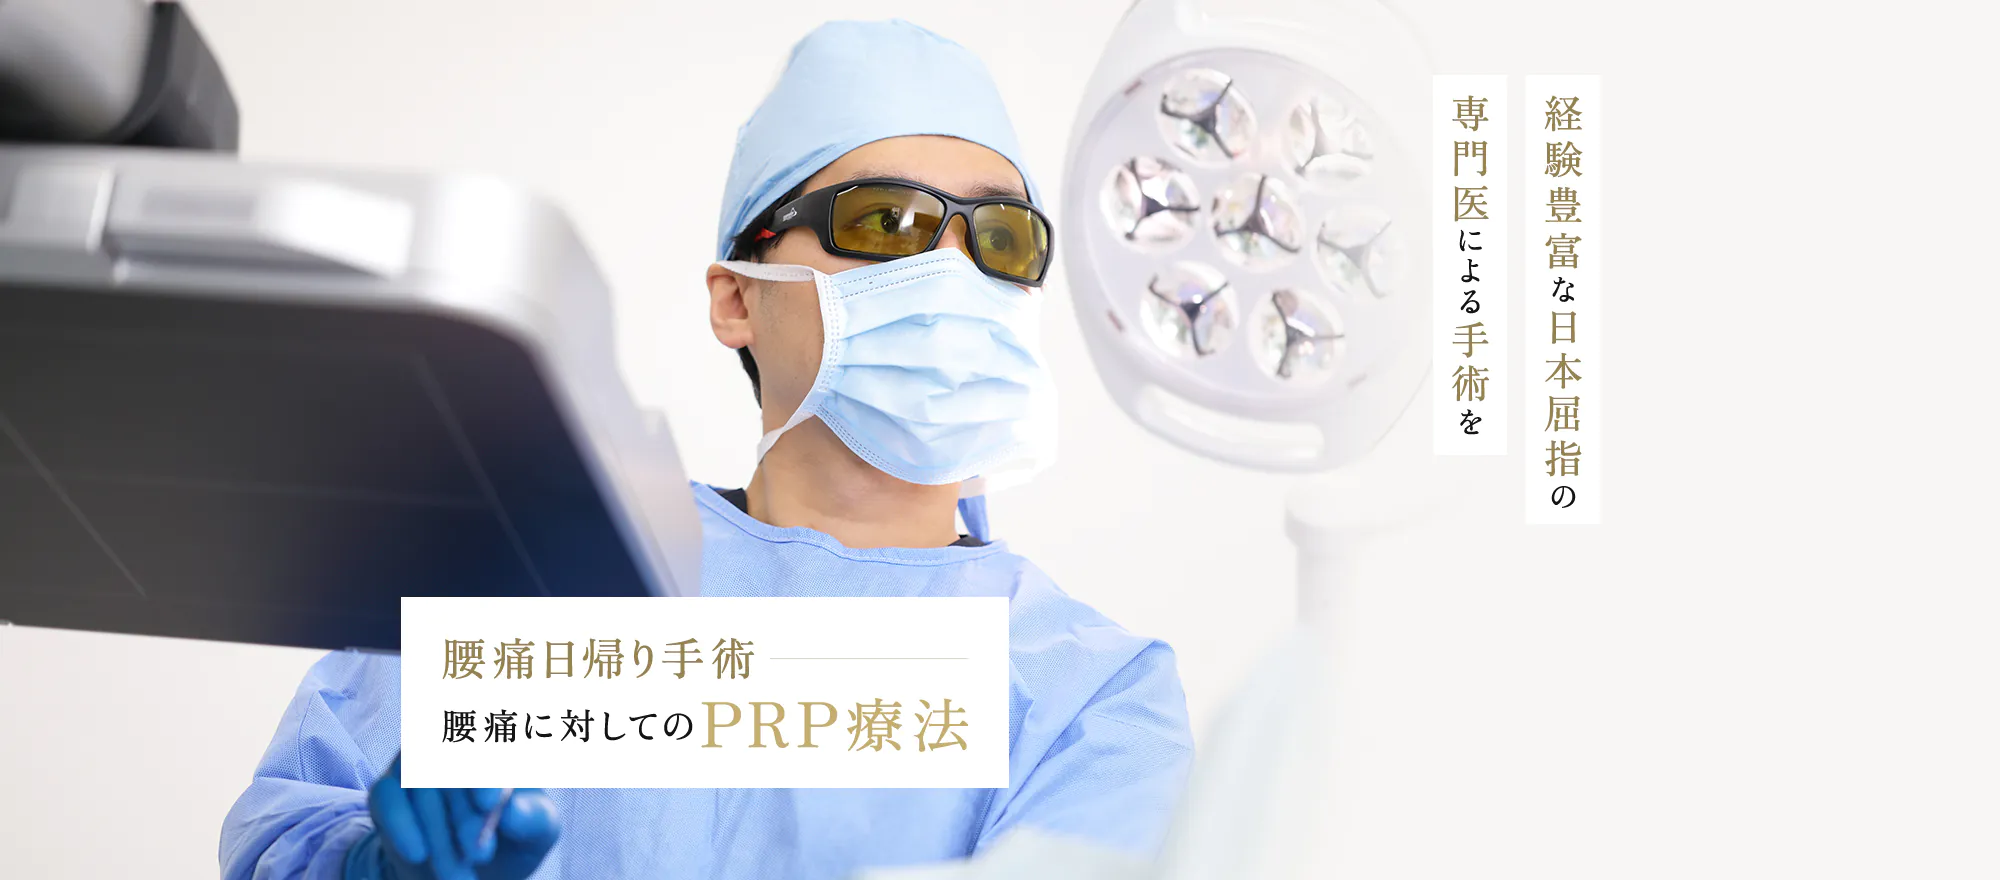 経験豊富な日本屈指の専門医による手術を 腰痛日帰り手術 腰痛に対してのPRP療法